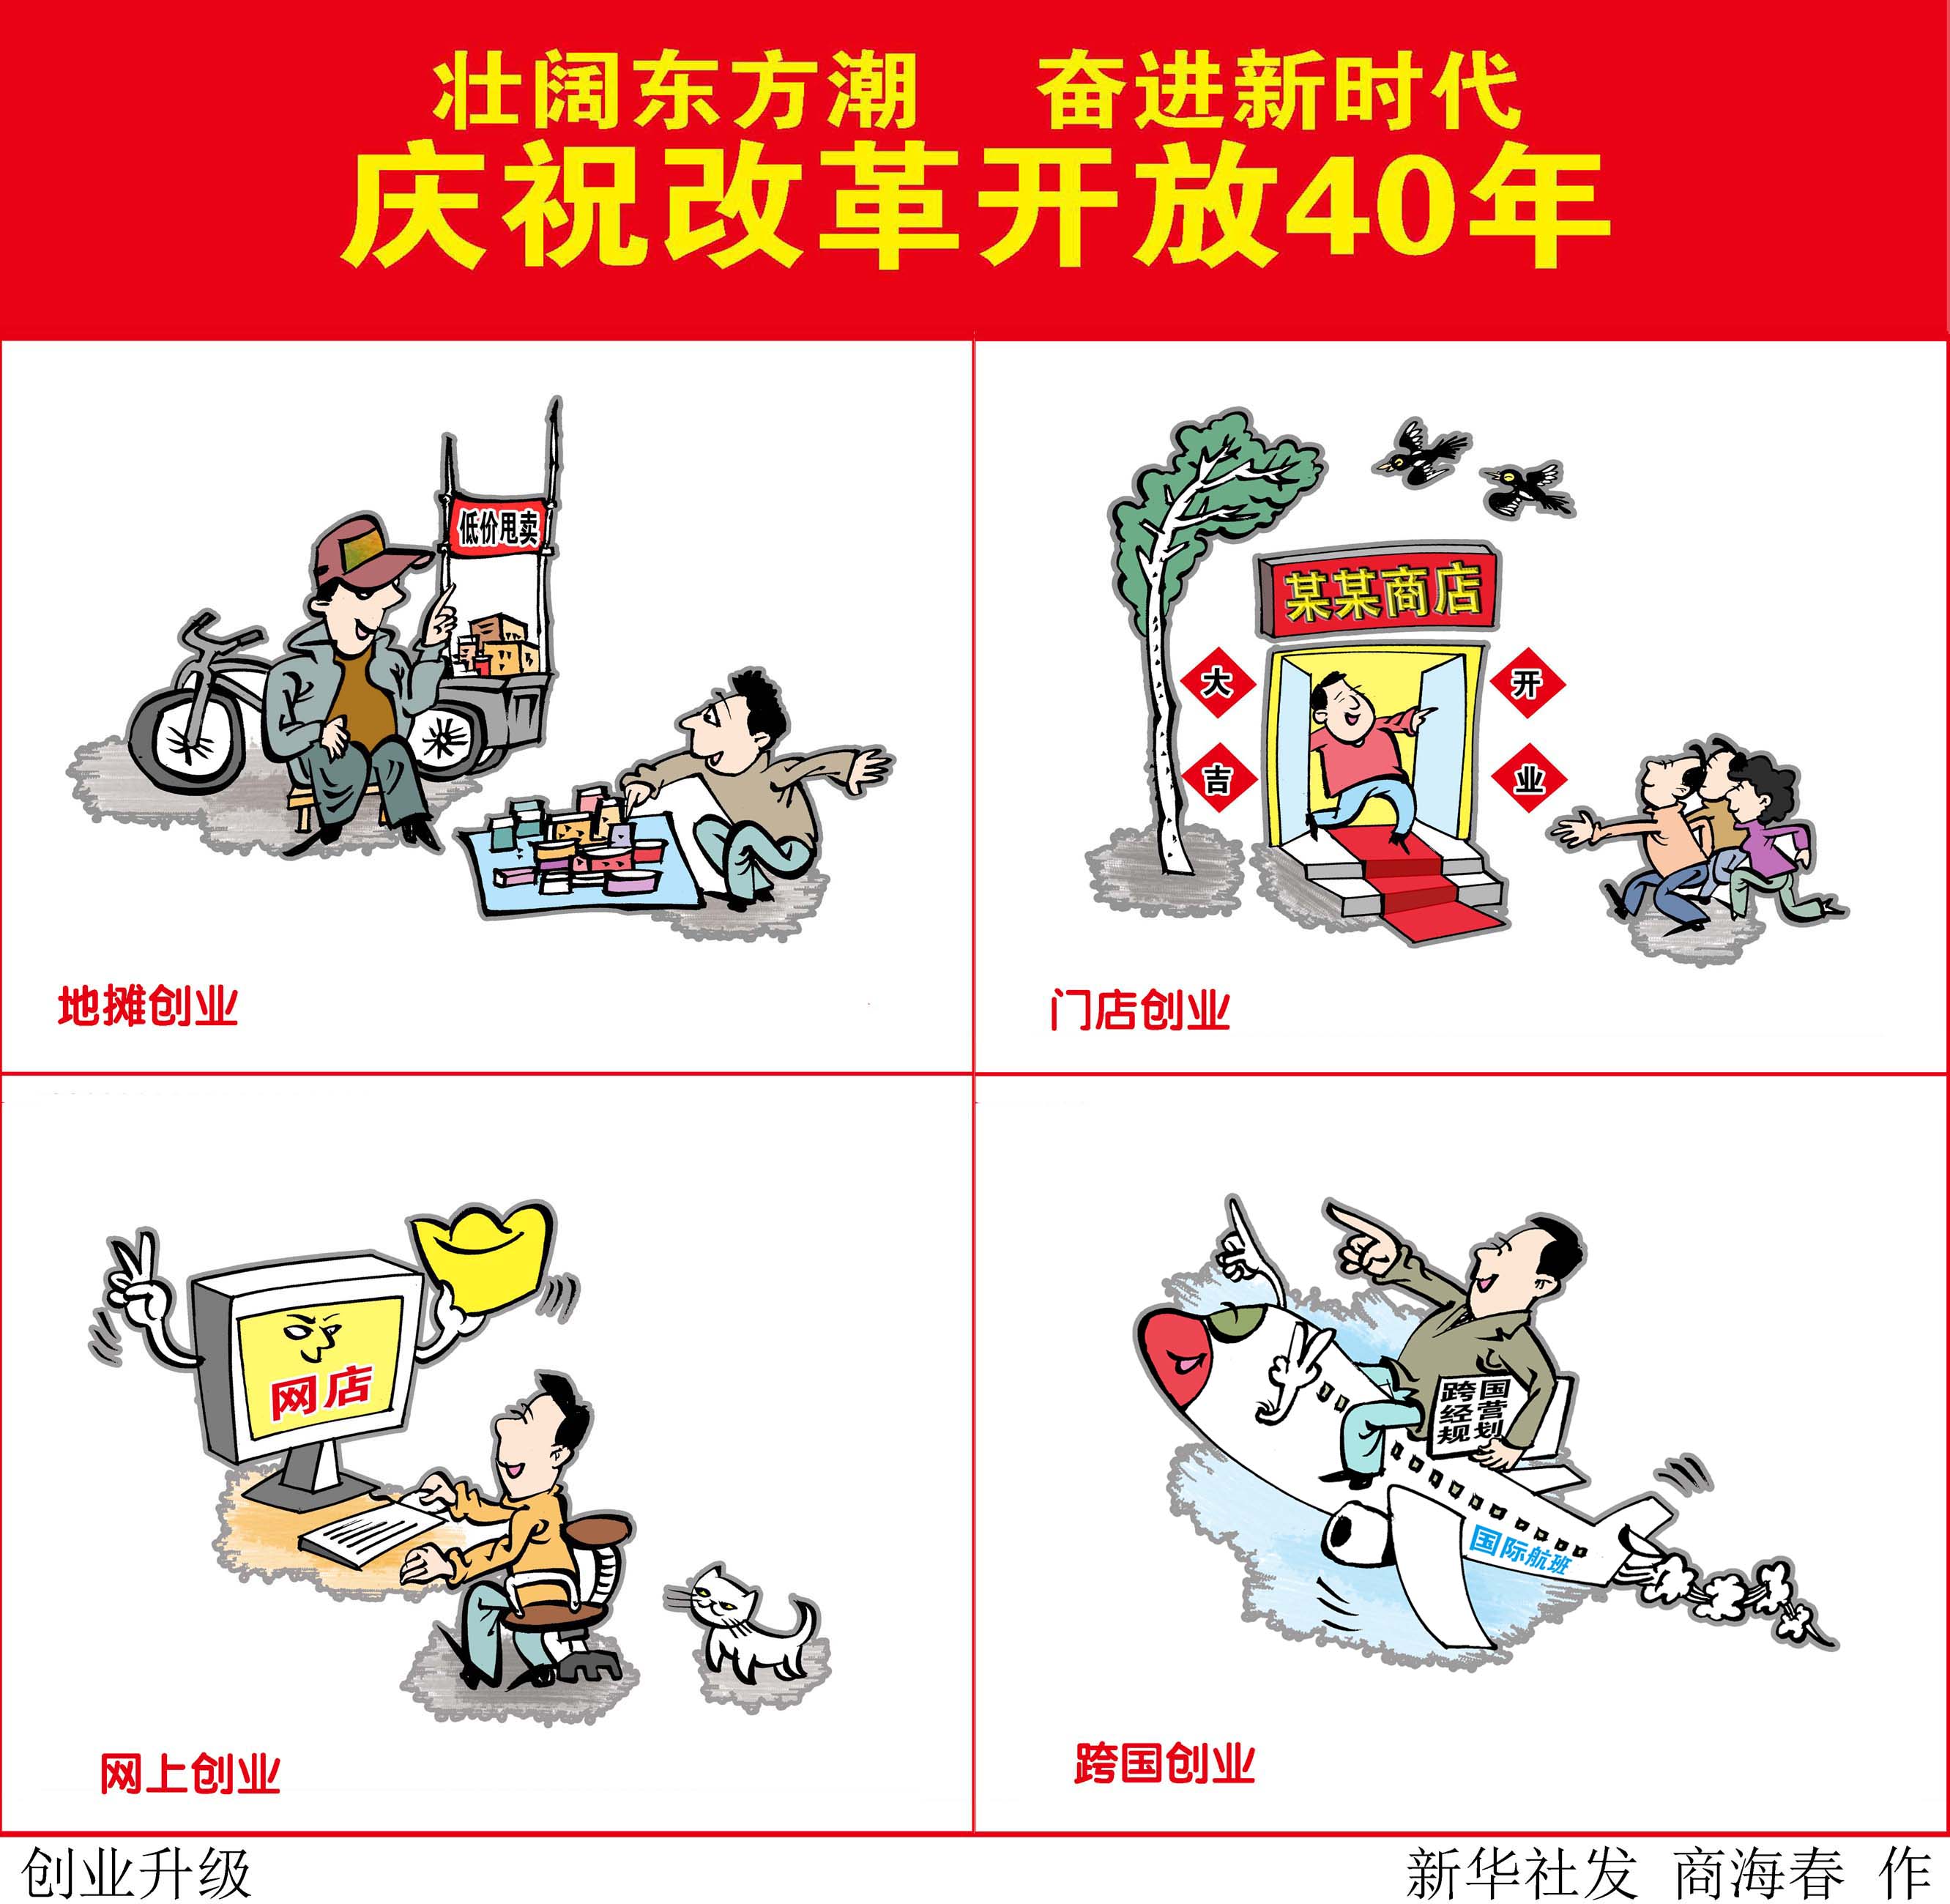 (图表·漫画)[壮阔东方潮 奋进新时代——庆祝改革开放40年]创业升级